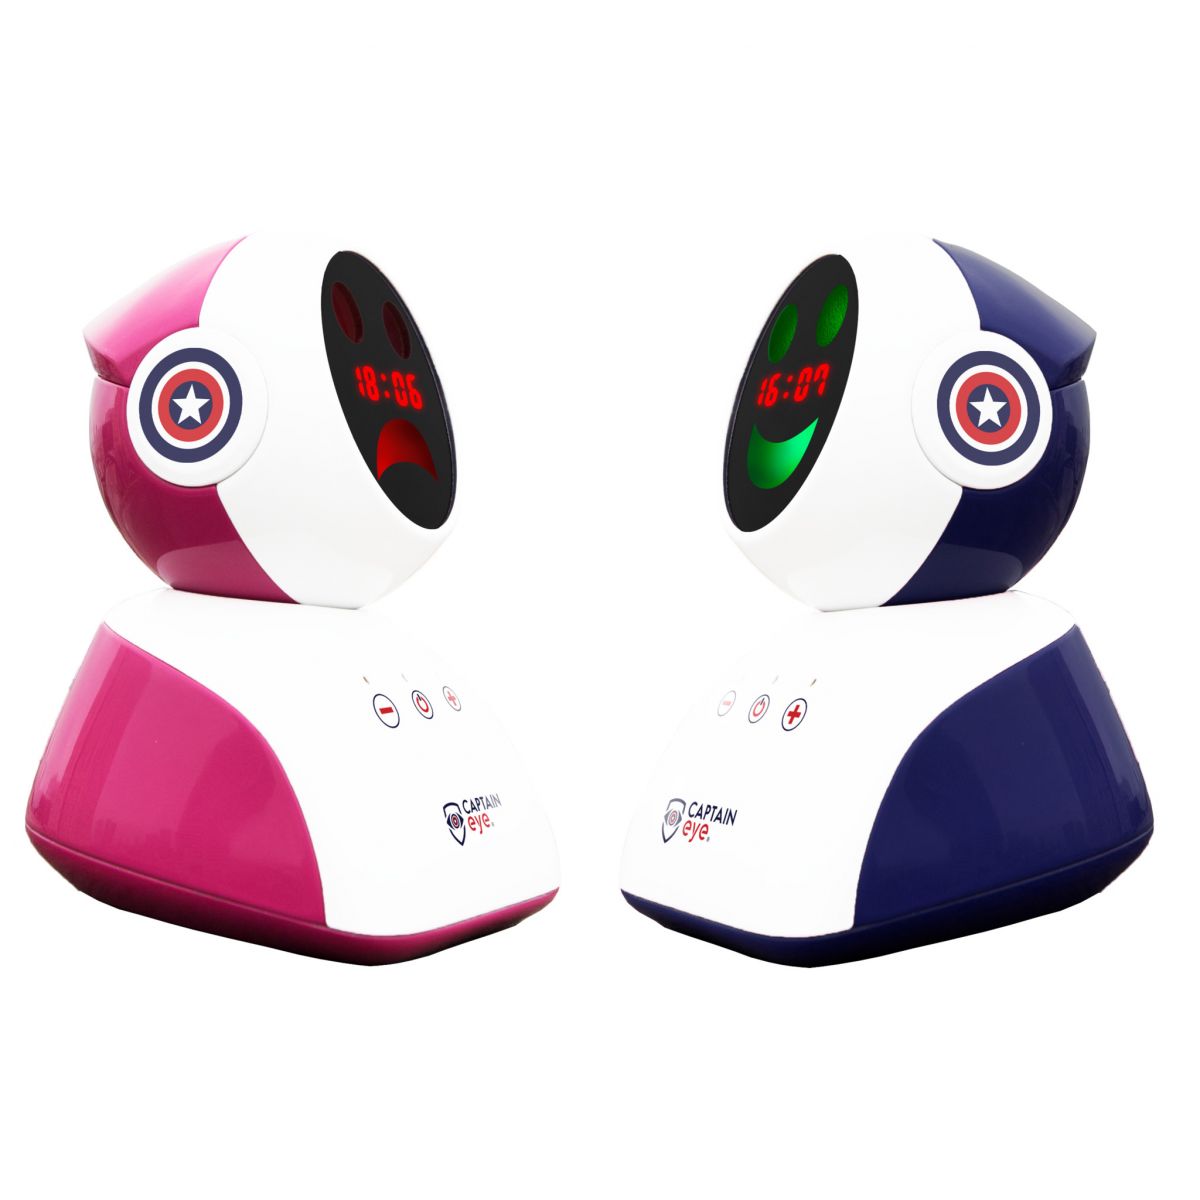 Captain Eye - Robot chống cận thị, gù lưng và hỗ trợ giám sát học tập trẻ em Plus 4.0